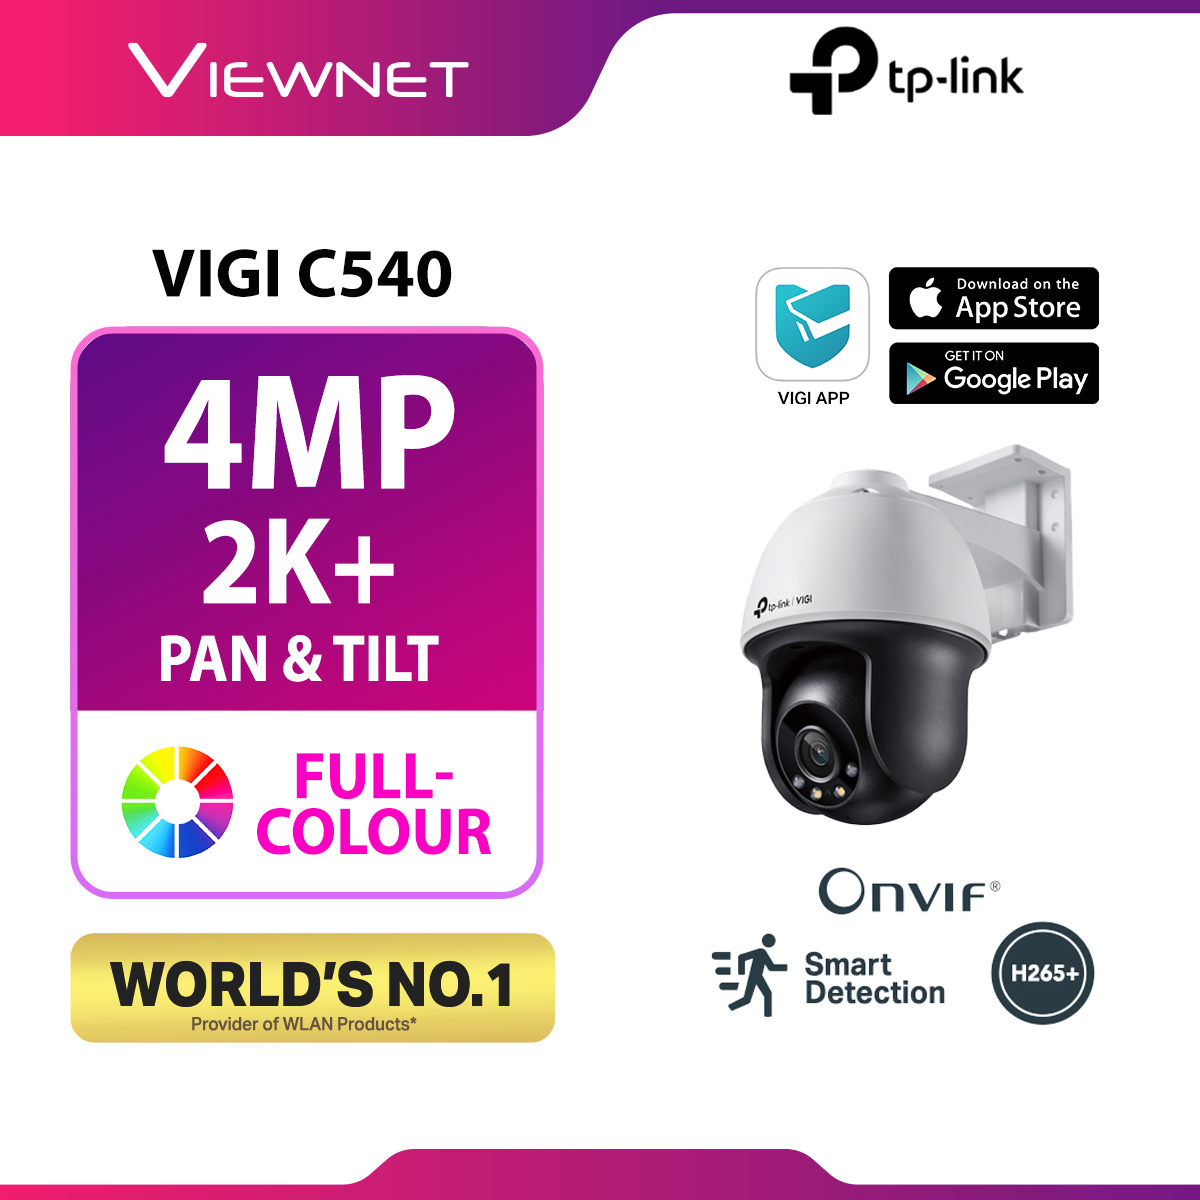 TP-Link VIGI C540 & C440 & C340 (WIRED) 4MP Full Color Ultra-High Definition Smart CCTV / Camera